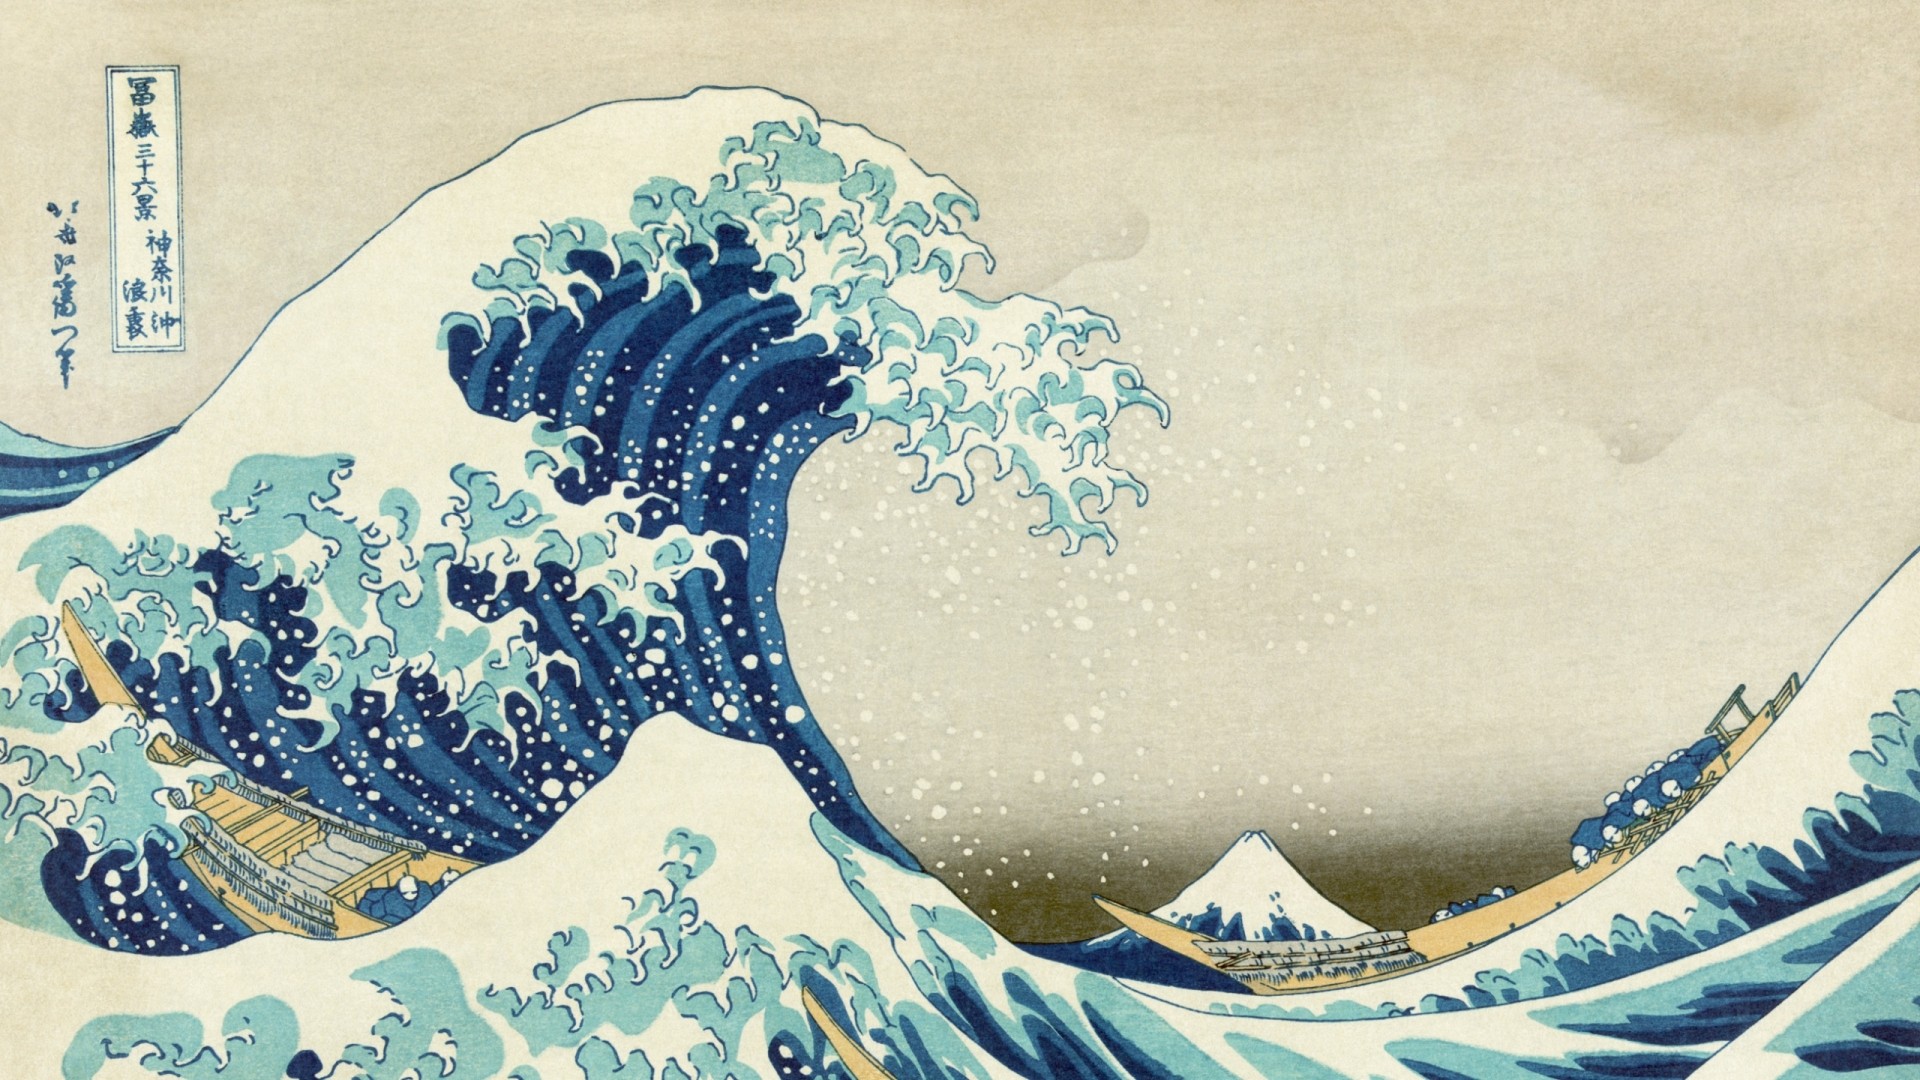   Hokusai The Great Wave at Kanagawa Wallpaper Japanese Artjpg